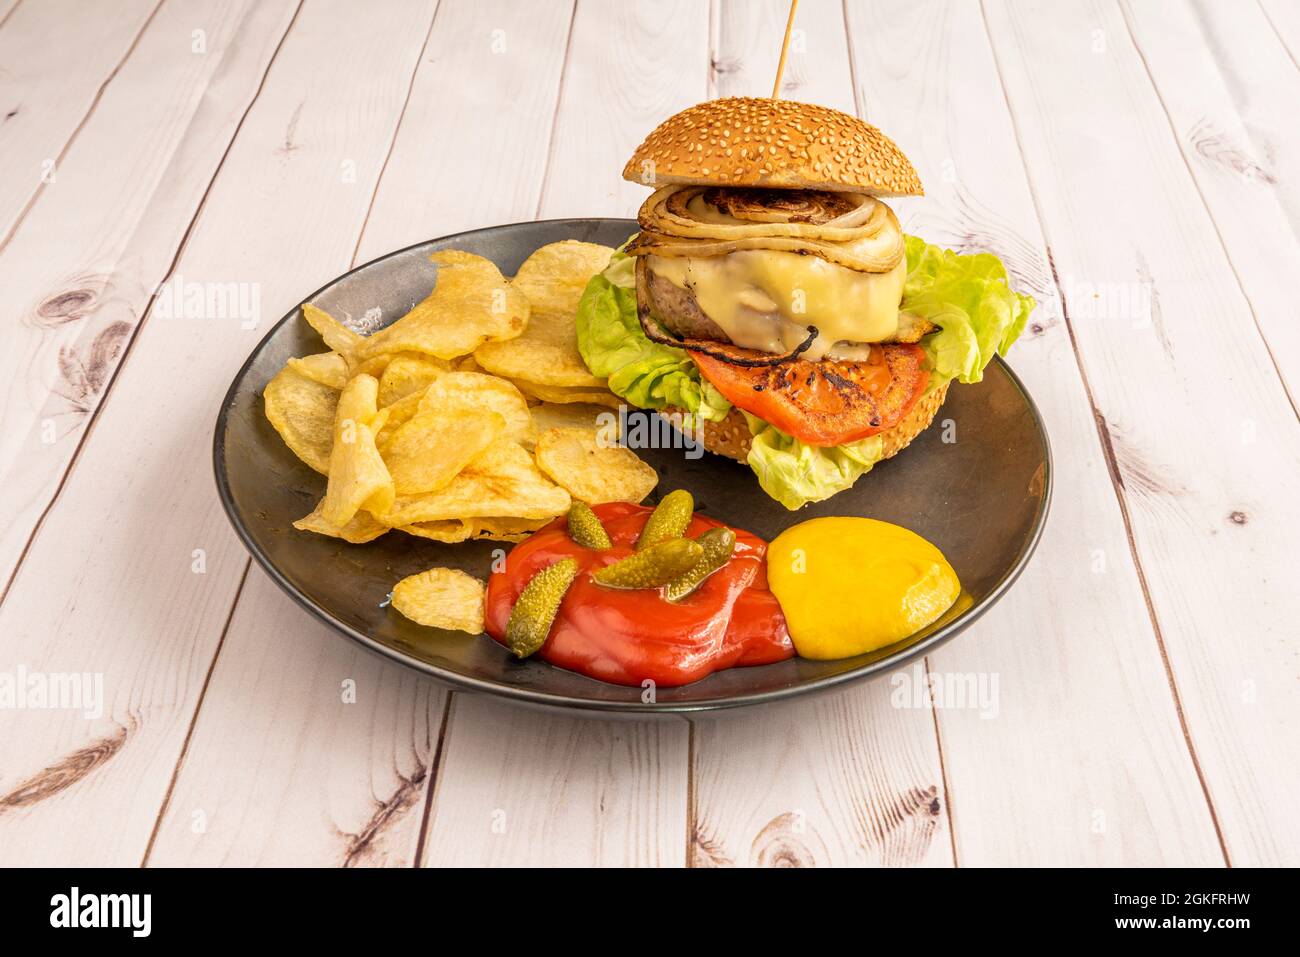 Rinderburger mit gebratener Zwiebel mit Tomaten, Salat, geschmolzenem Käse, Pommes frites, eingelegte Gurken, Ketchup und Senf Stockfoto